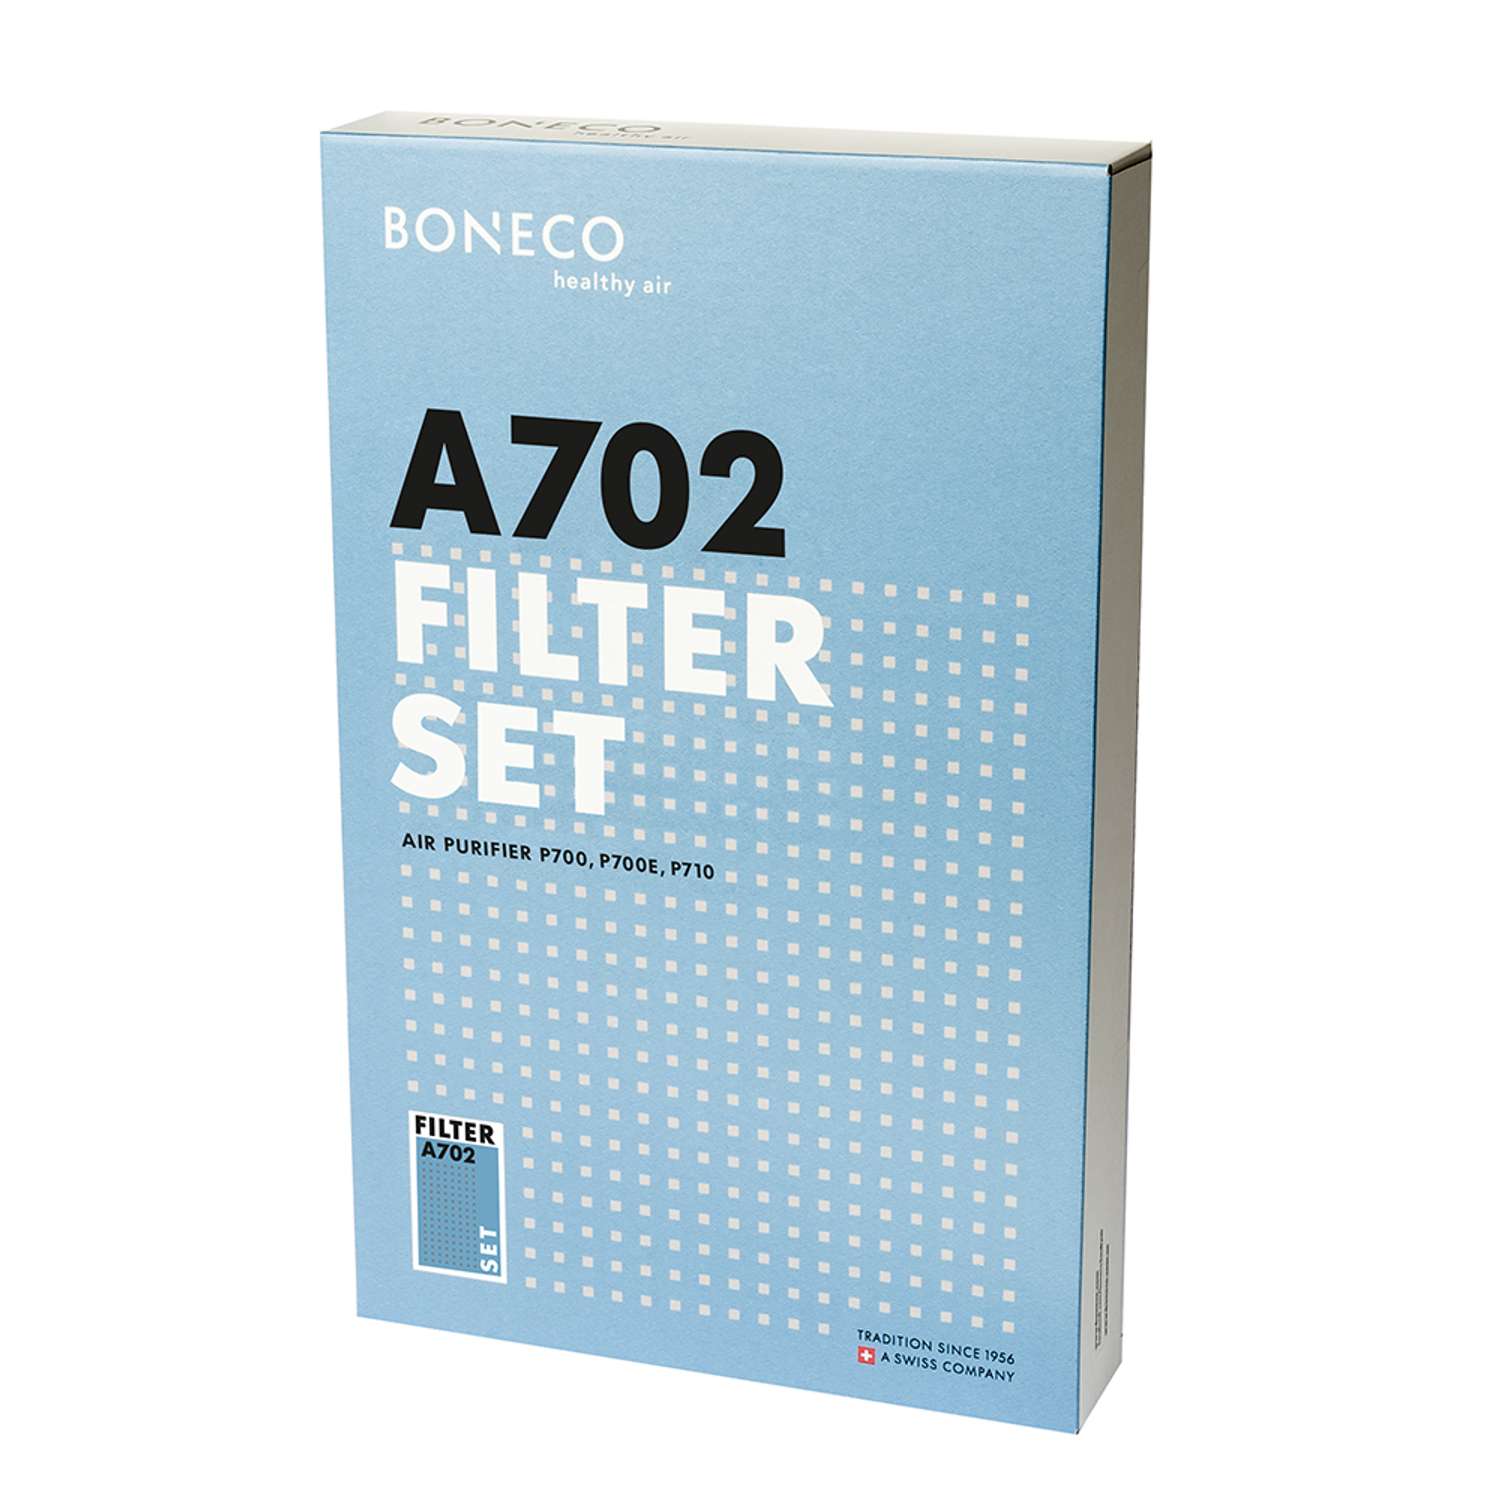 Фильтр НЕРА + CARBON Boneco А702 комплект из 2 кассет - для очистителя воздуха Boneco Р700 - фото 2